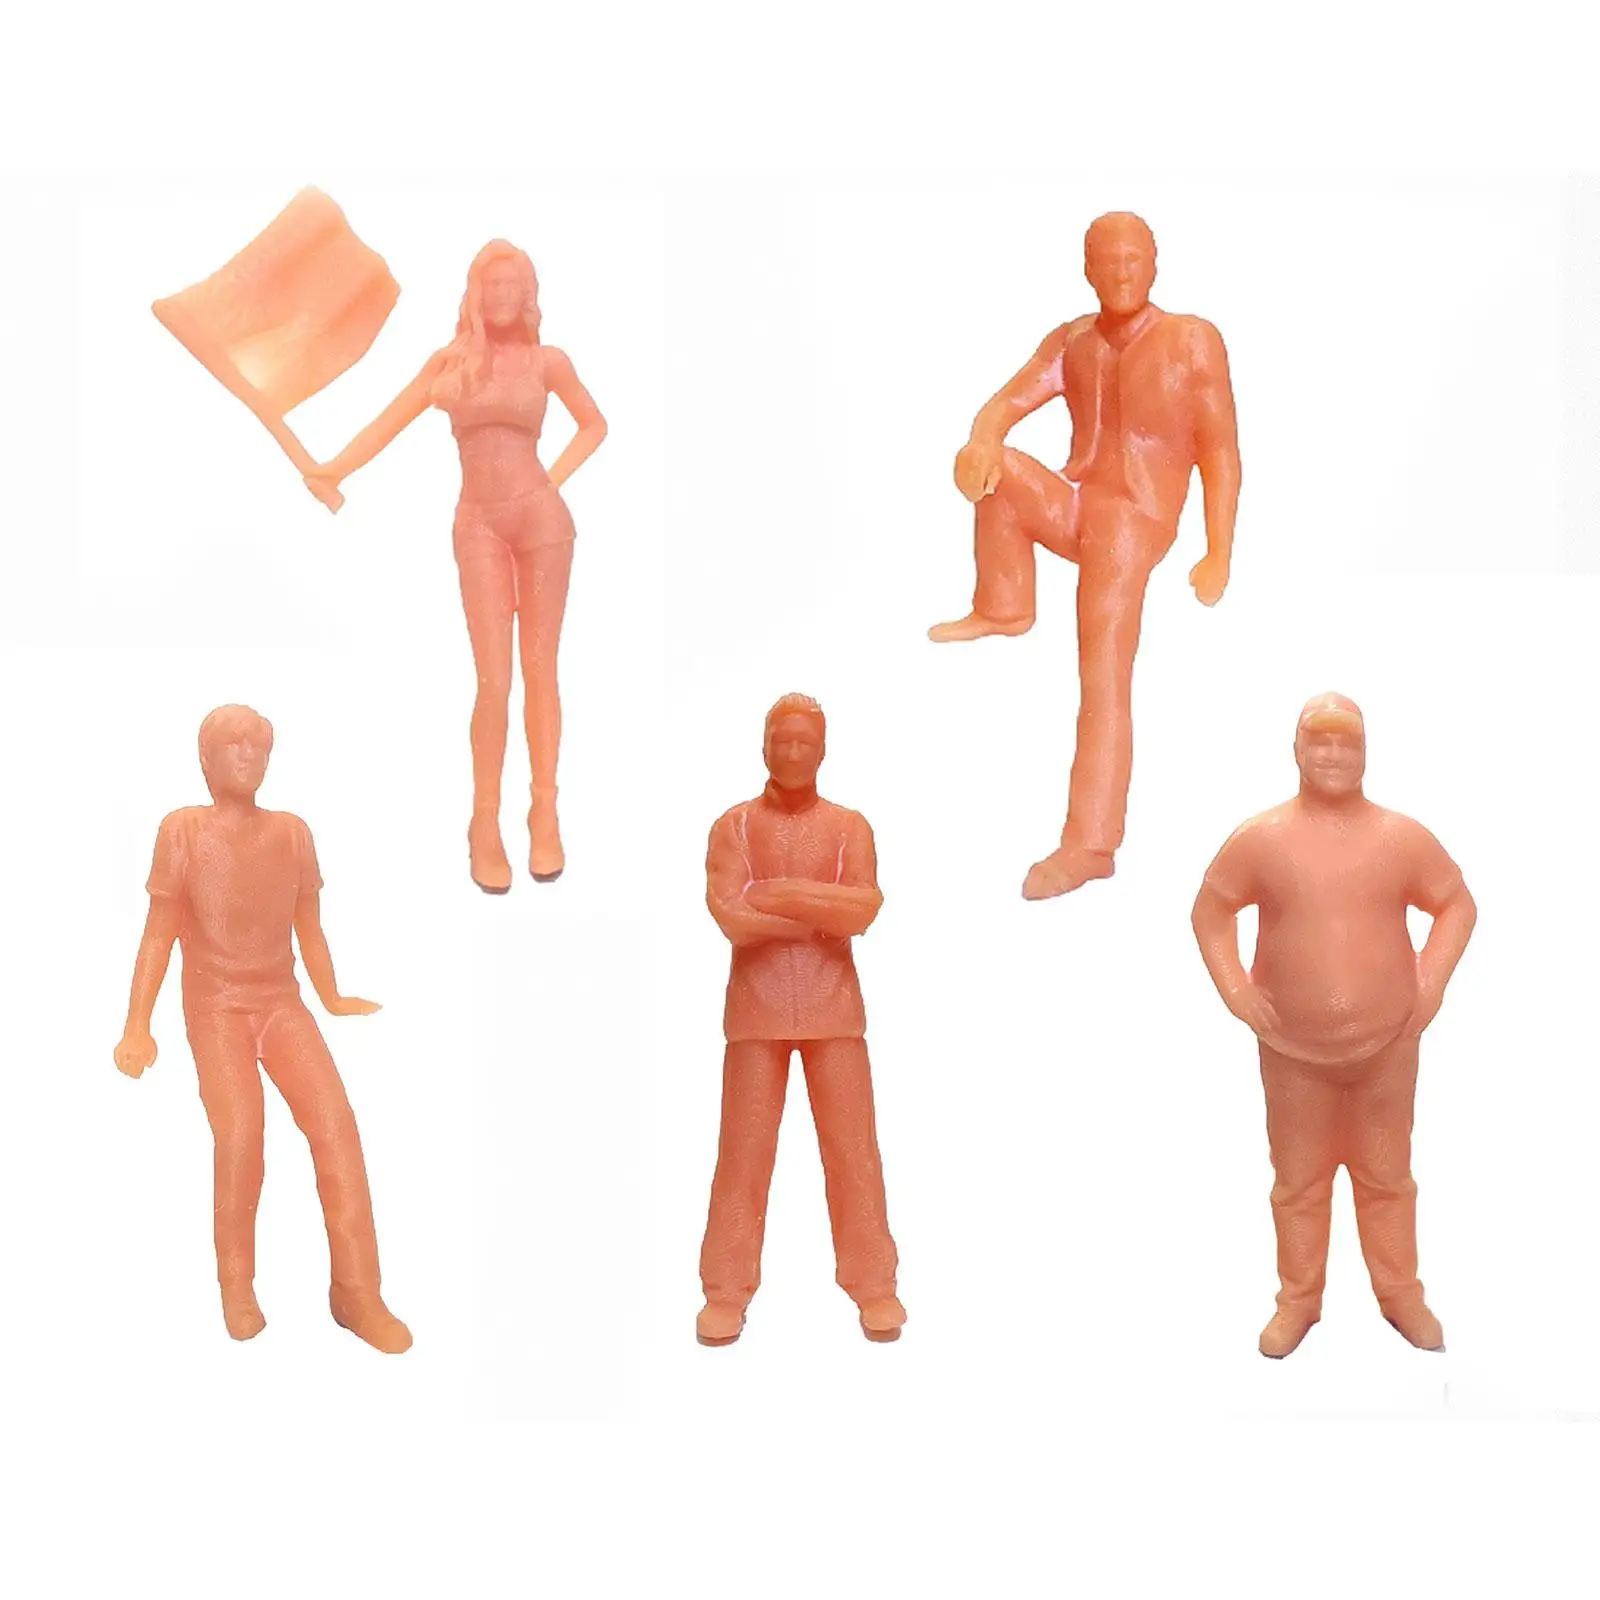 5x 1/64 Scale People Figure Simulation Miniature Model Figures Tiny People for Fairy Garden Diorama Miniature Scene Accessories